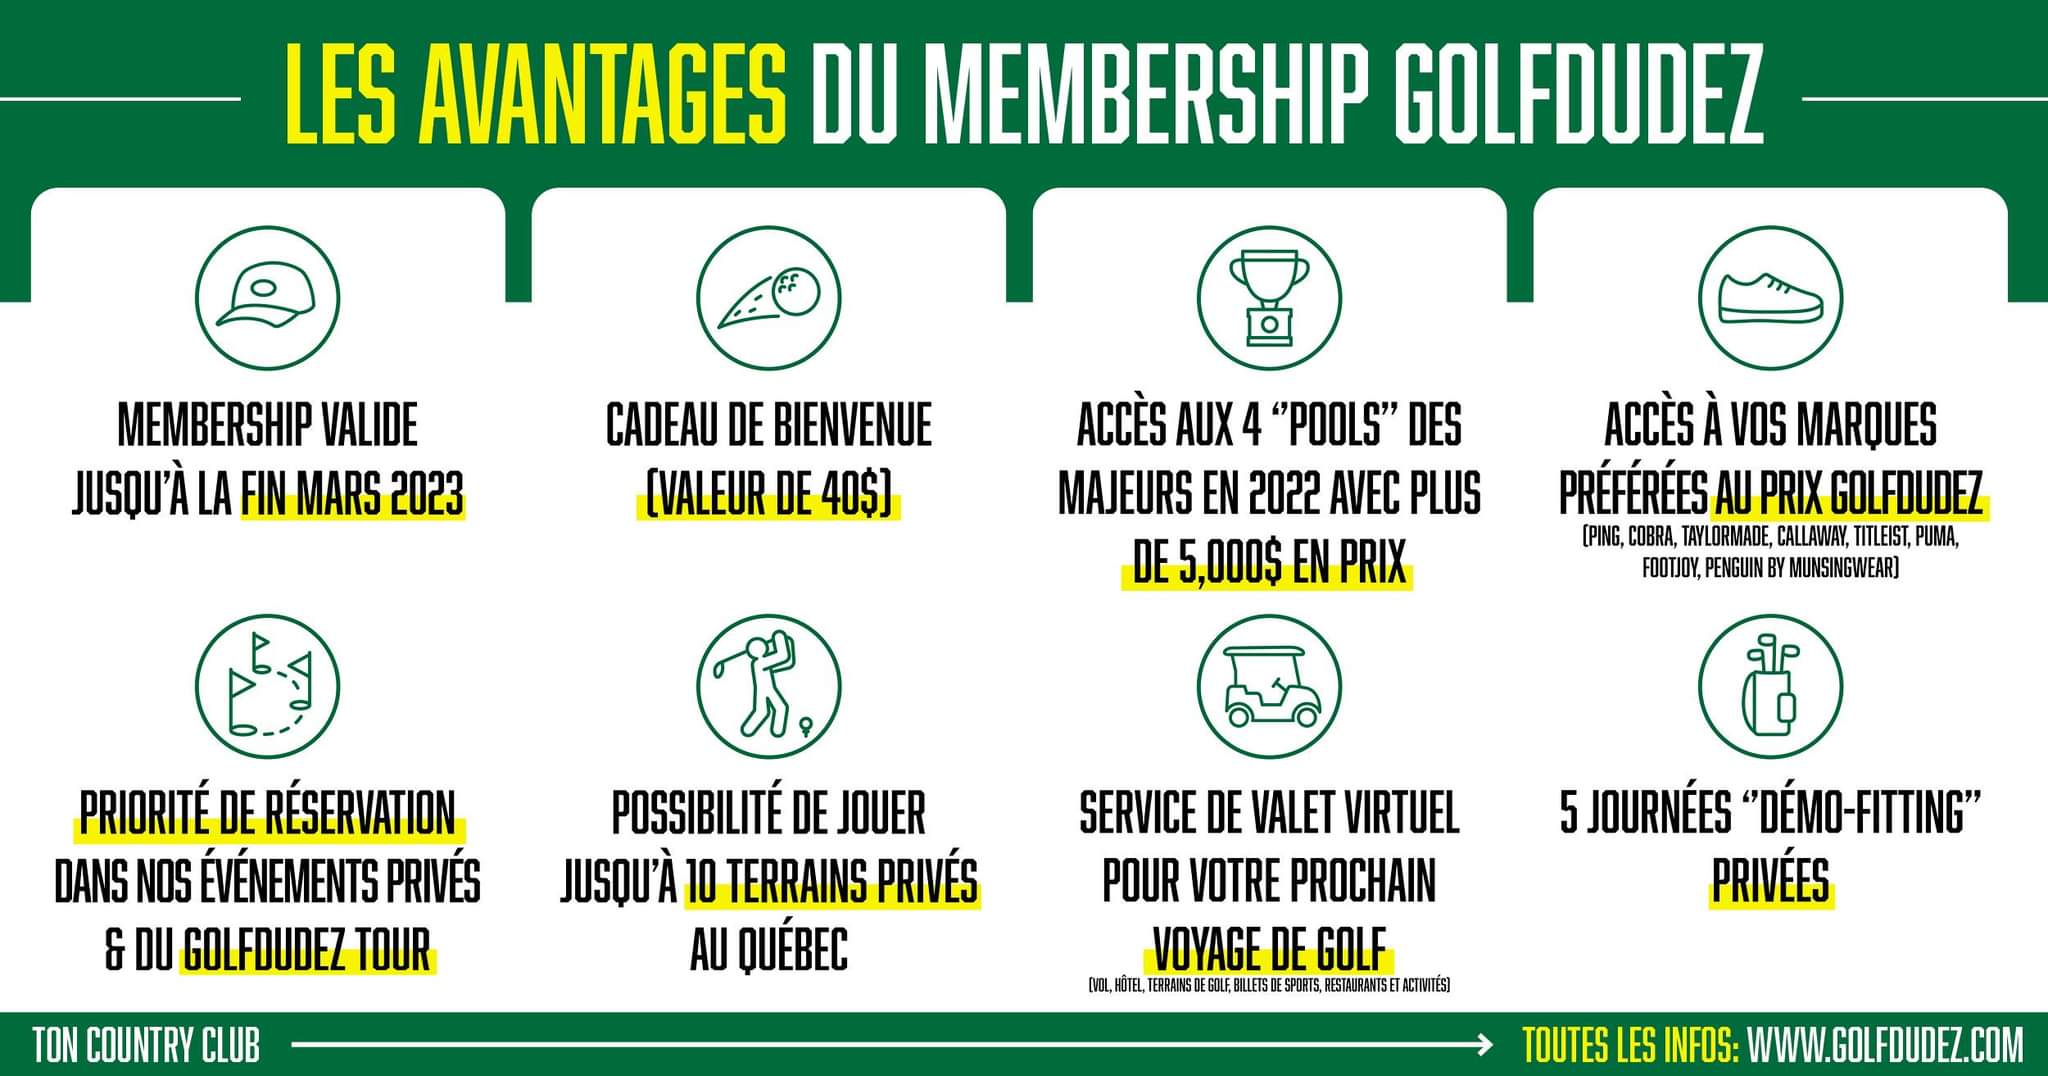 Les avantages du Membership Golfdudez - Bienvenue aux membres